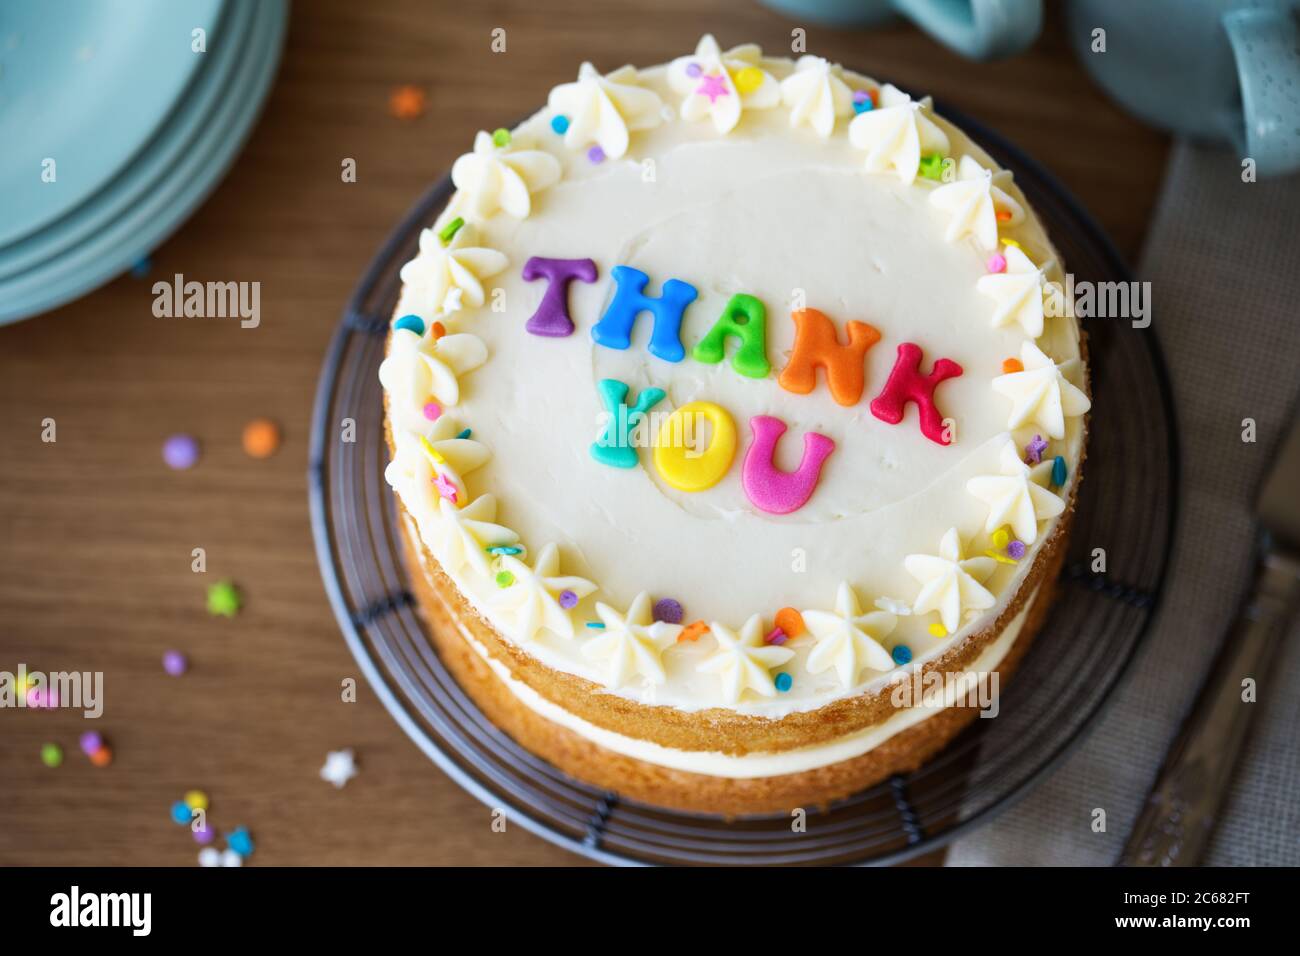 Kuchen mit bunten Regenbogen Buchstaben Rechtschreibung danke Stockfoto